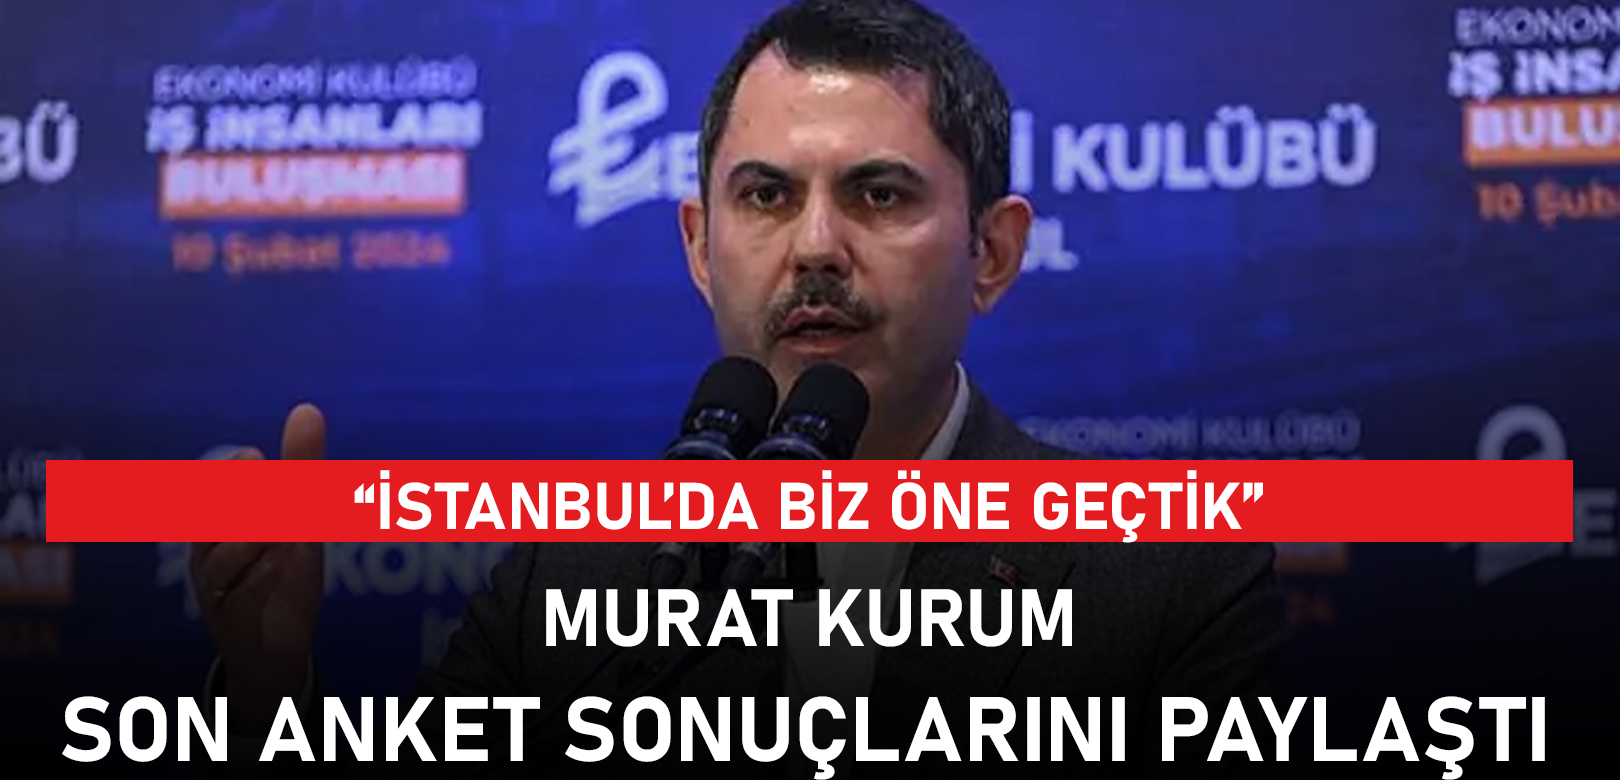 Murat Kurum 'son anket' diyerek açıkladı: İstanbul'da biz öndeyiz